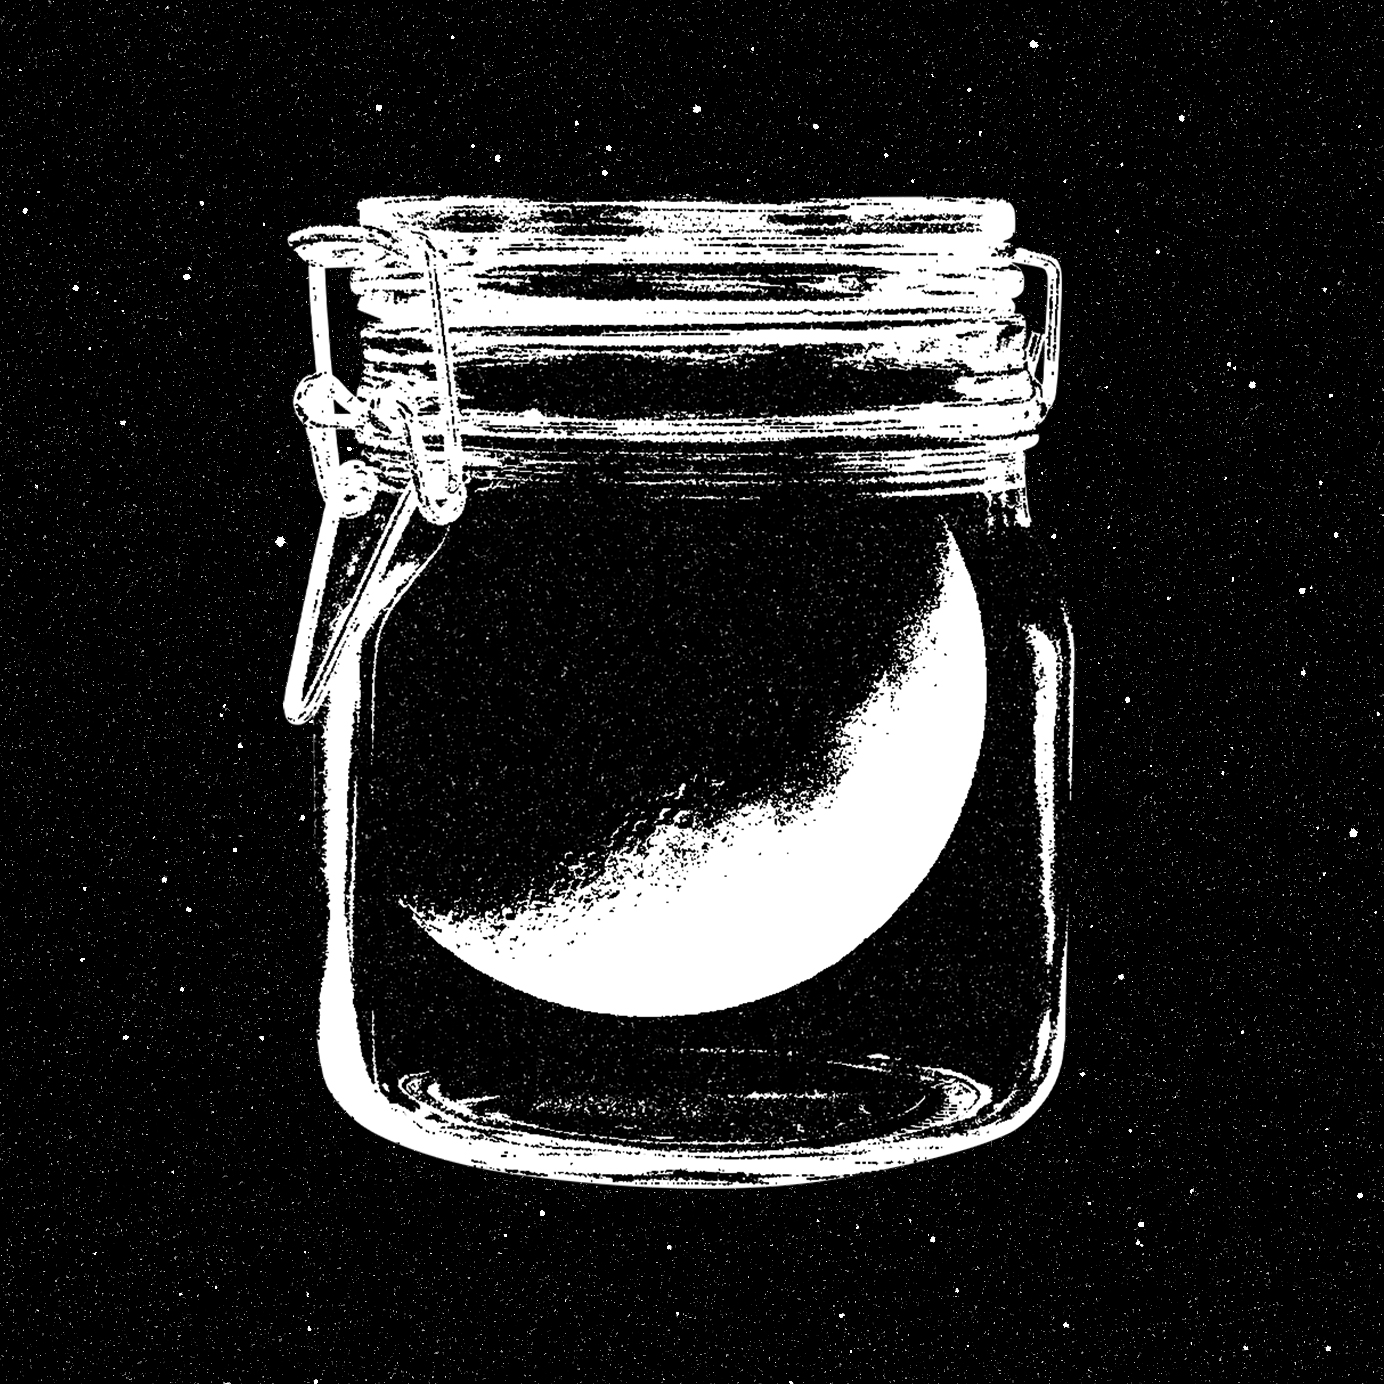 moonshine drawing